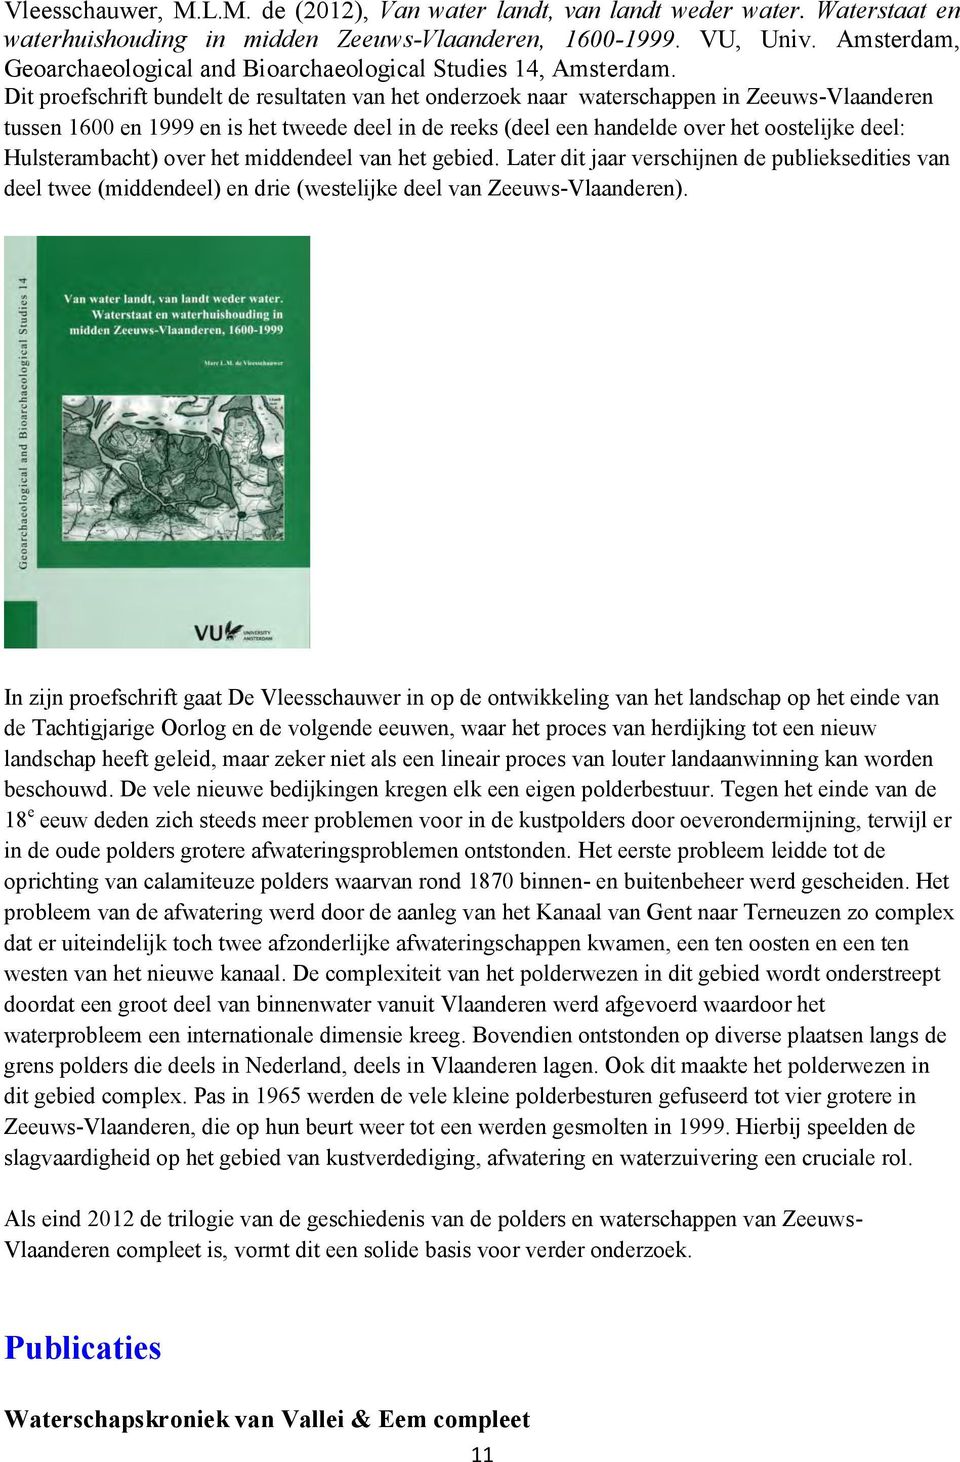 Dit proefschrift bundelt de resultaten van het onderzoek naar waterschappen in Zeeuws-Vlaanderen tussen 1600 en 1999 en is het tweede deel in de reeks (deel een handelde over het oostelijke deel: